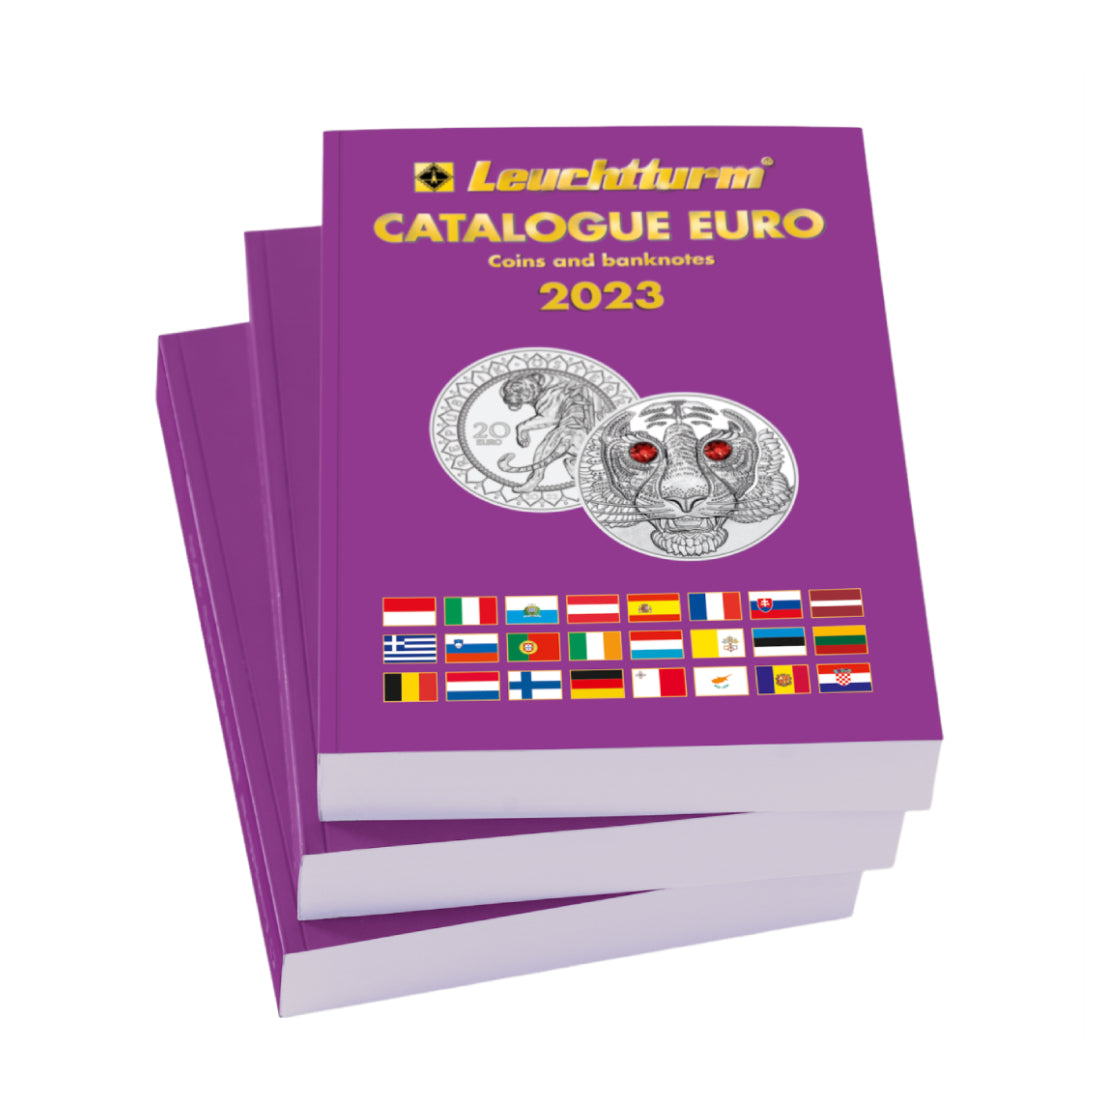 Catálogo Leuchtturm de monedas y billetes de euro 2023 (inglés)